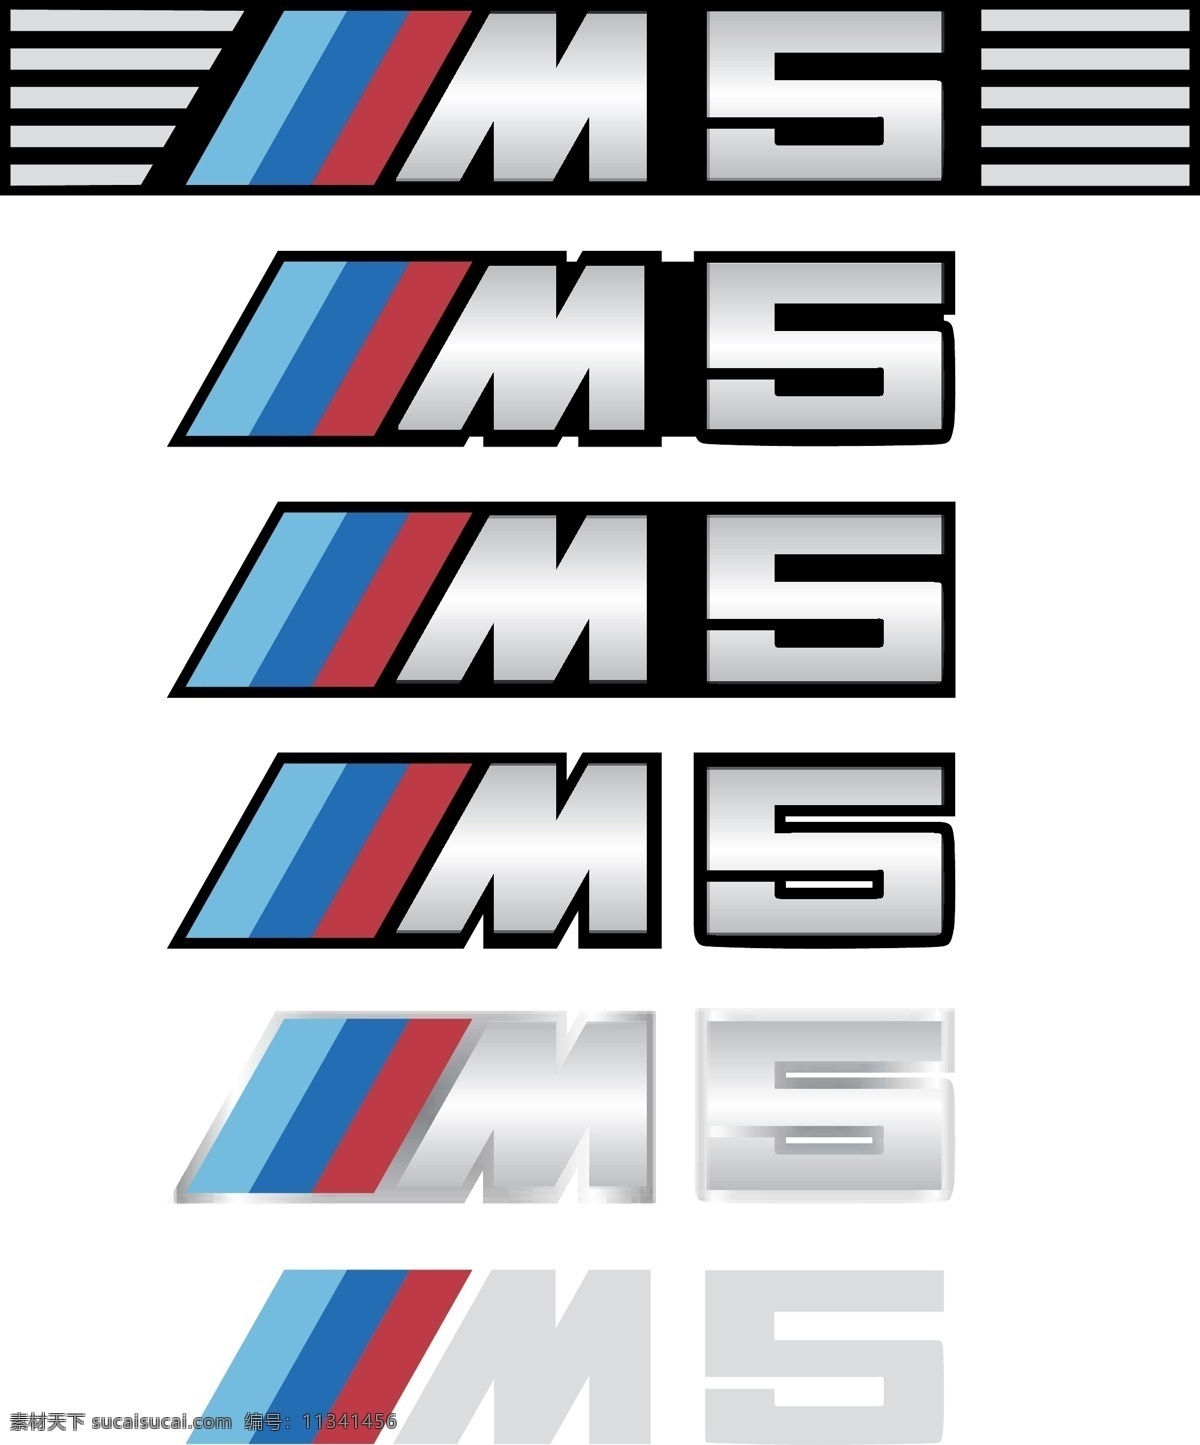 宝马 m5 车 标 logo 宝马m5车标 矢量图 宝马m5 bmw 高性能跑车 logo设计